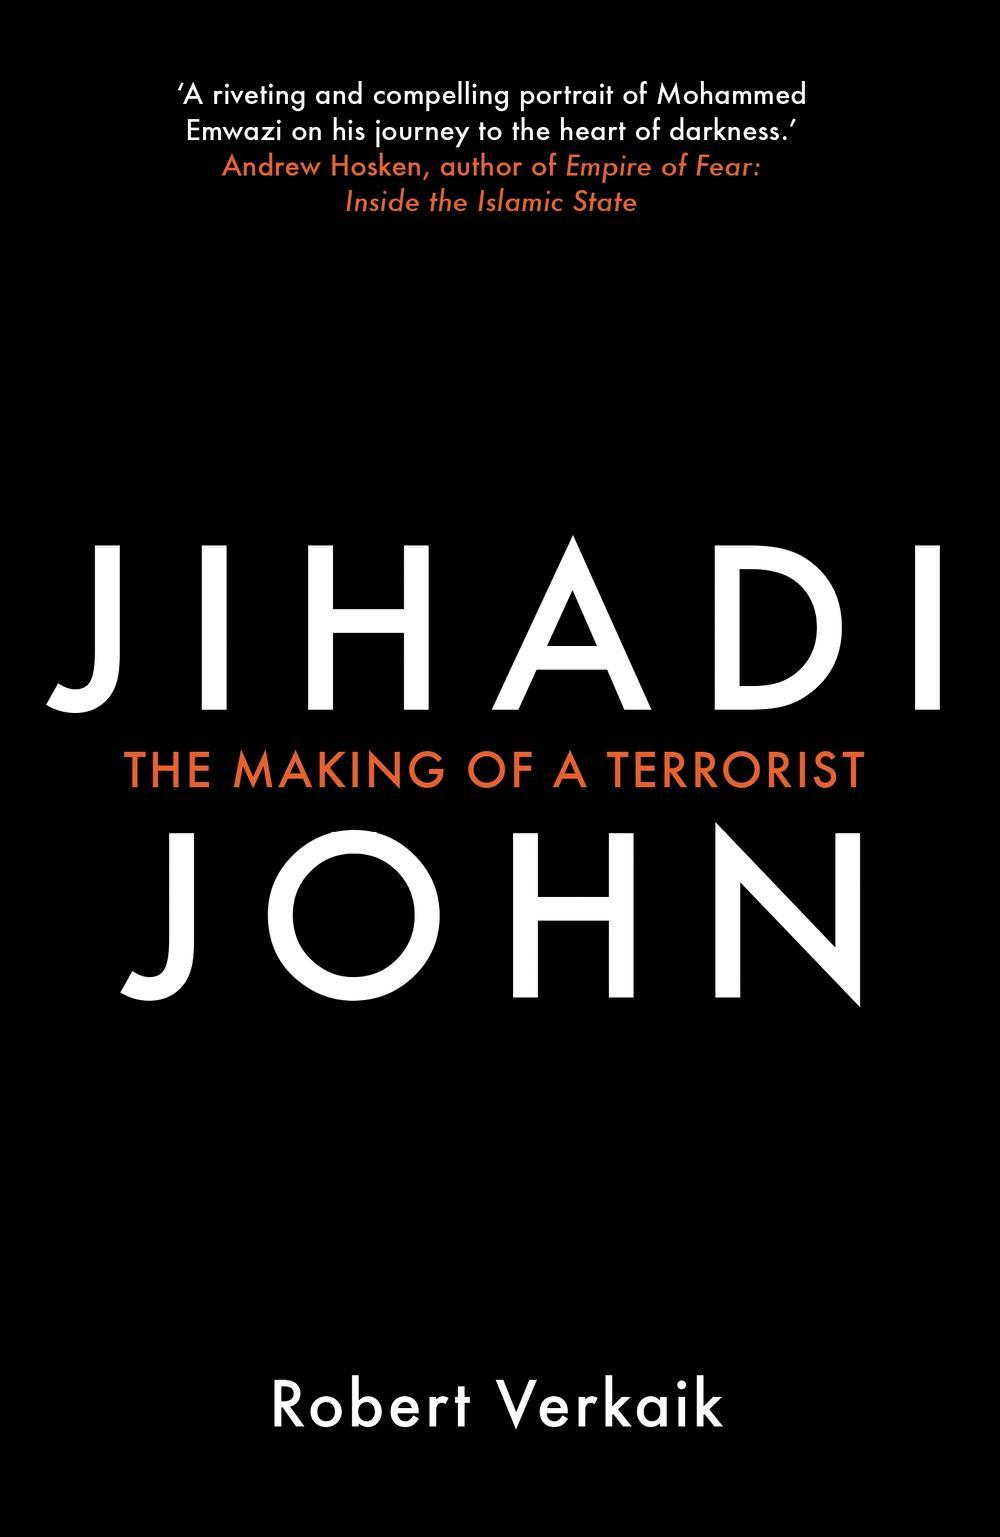 Jihadi John